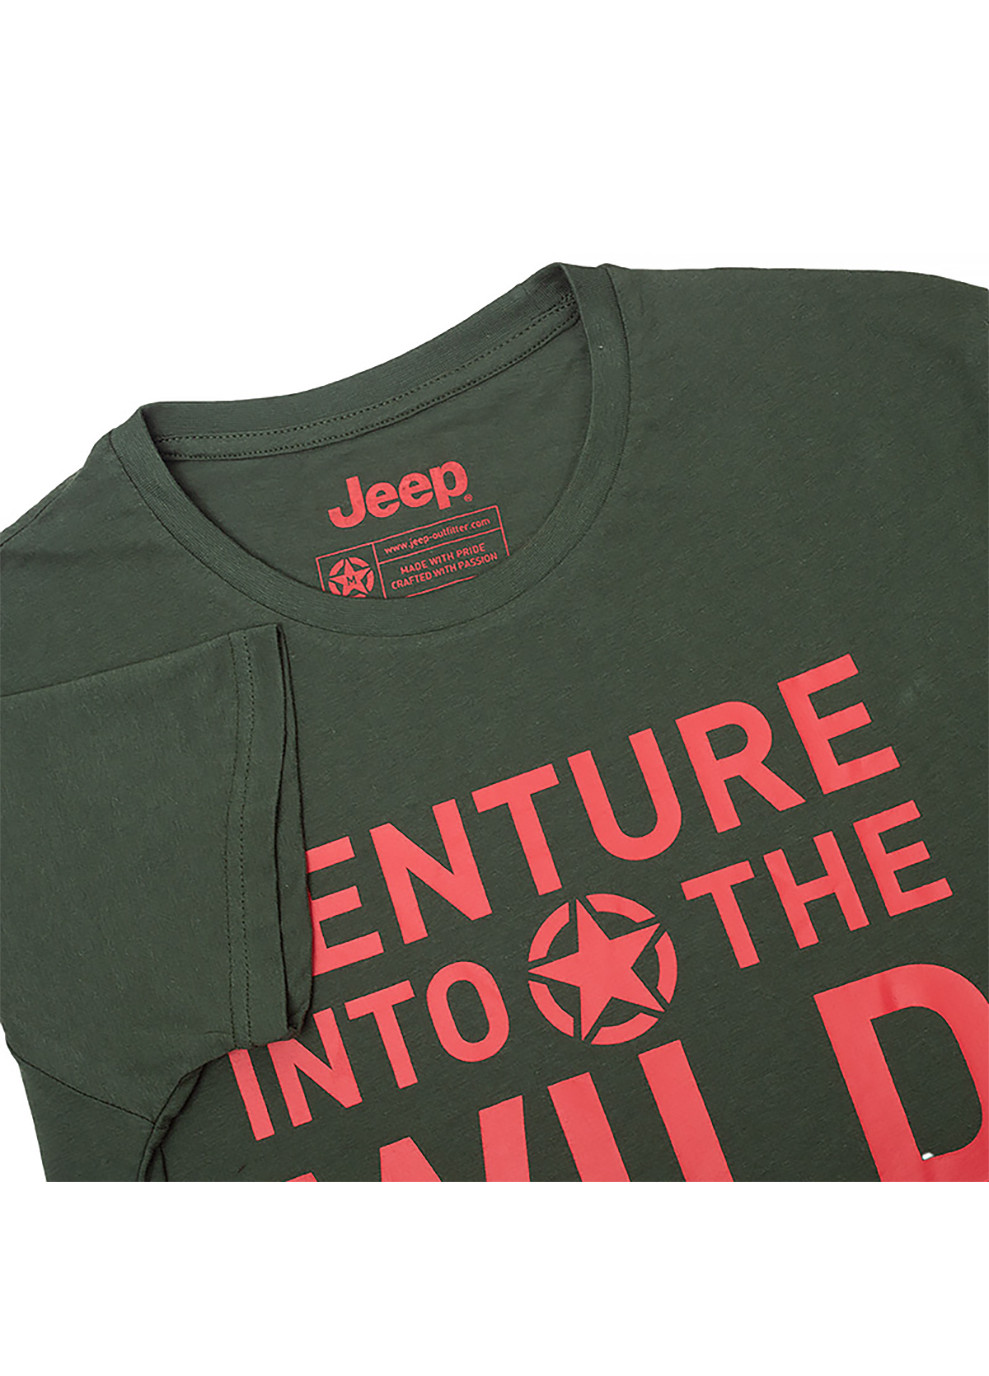 Хаки (оливковая) мужская футболка t-shirt venture into the wild хаки l (o102592-e848 l) Jeep